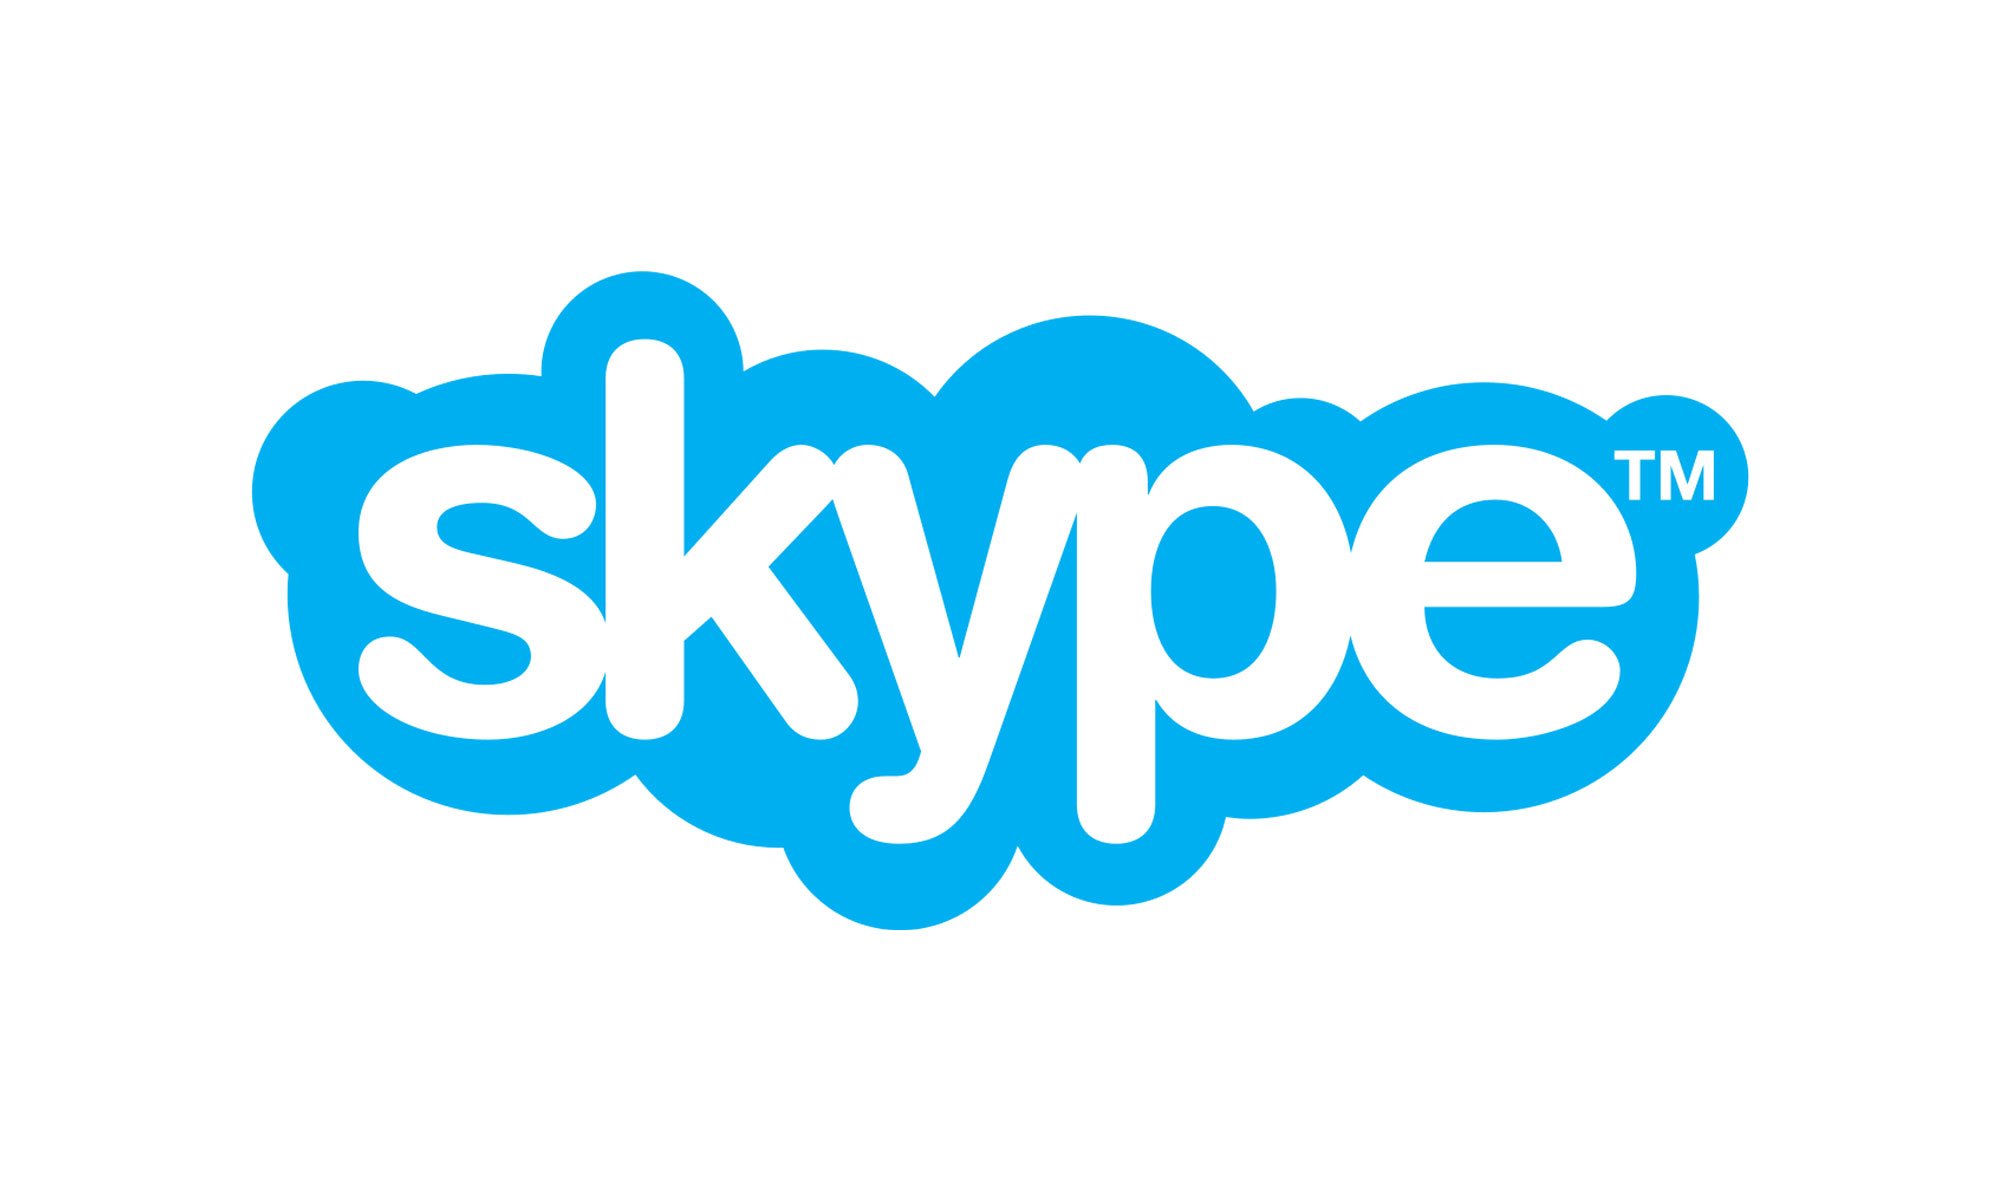 icona di skype stilizzata,